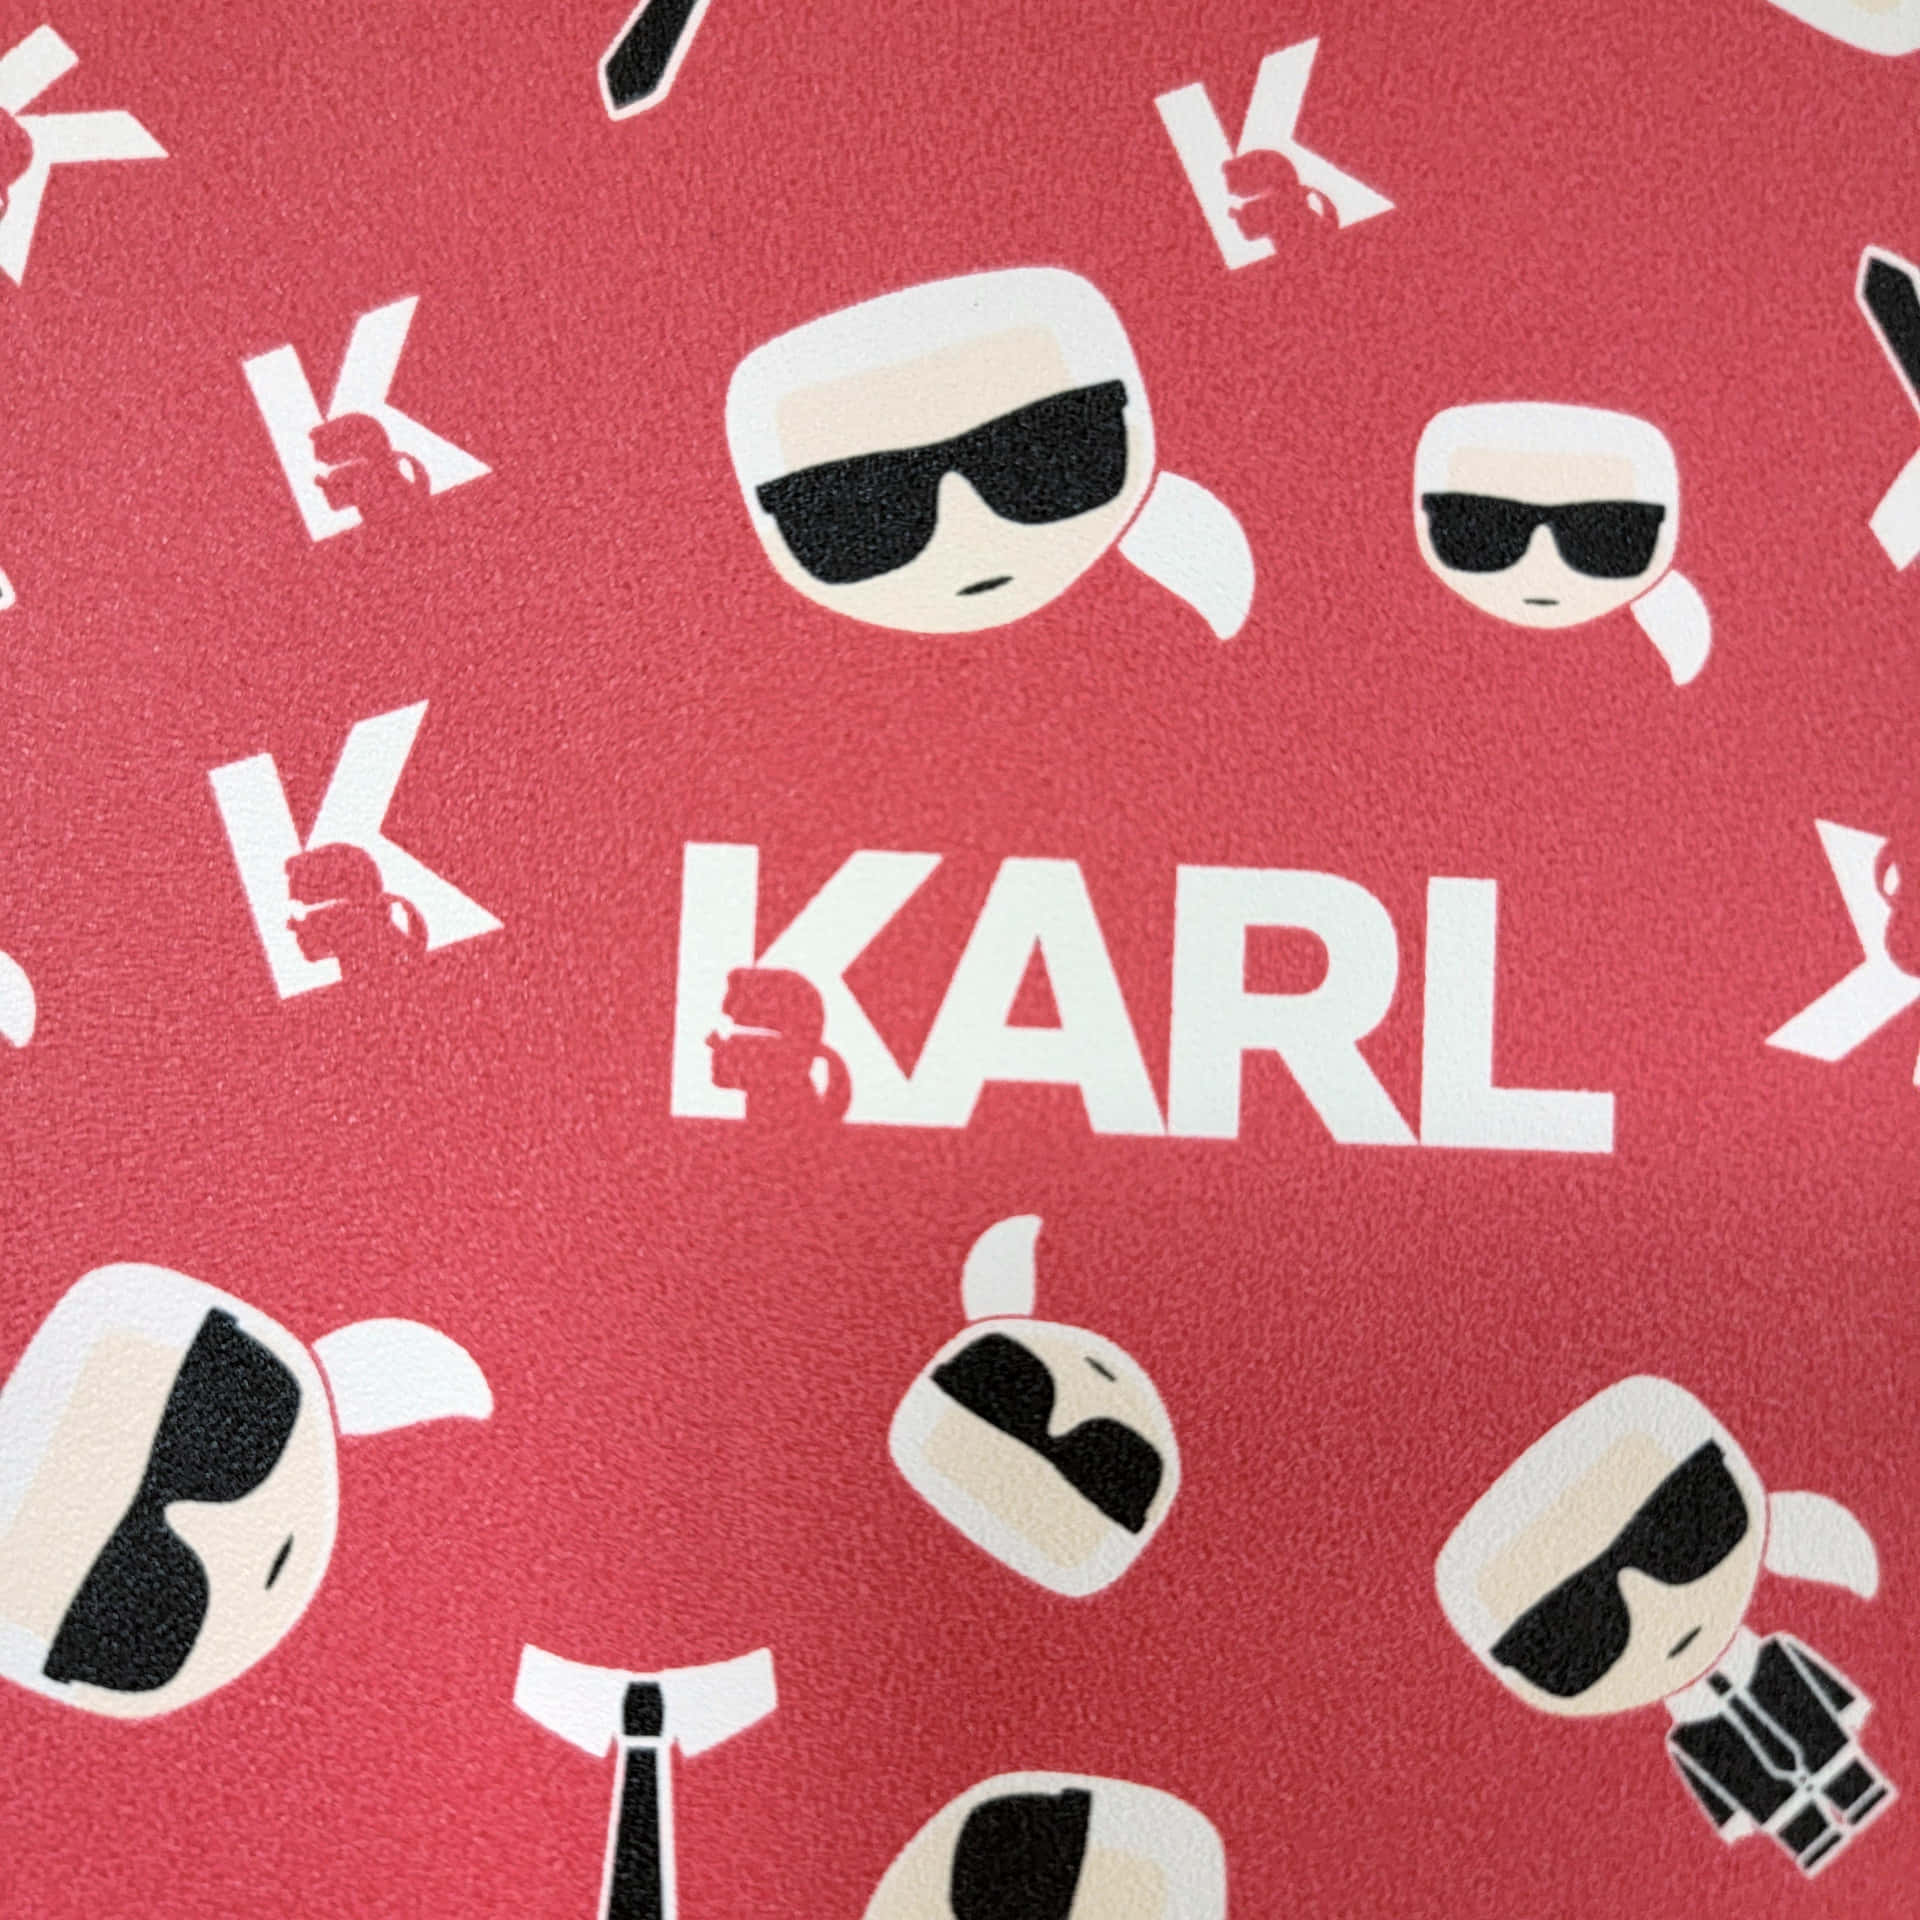 Karl Karl Karl Karl Karl Karl Karl Karl Karl Karl Kar Wallpaper